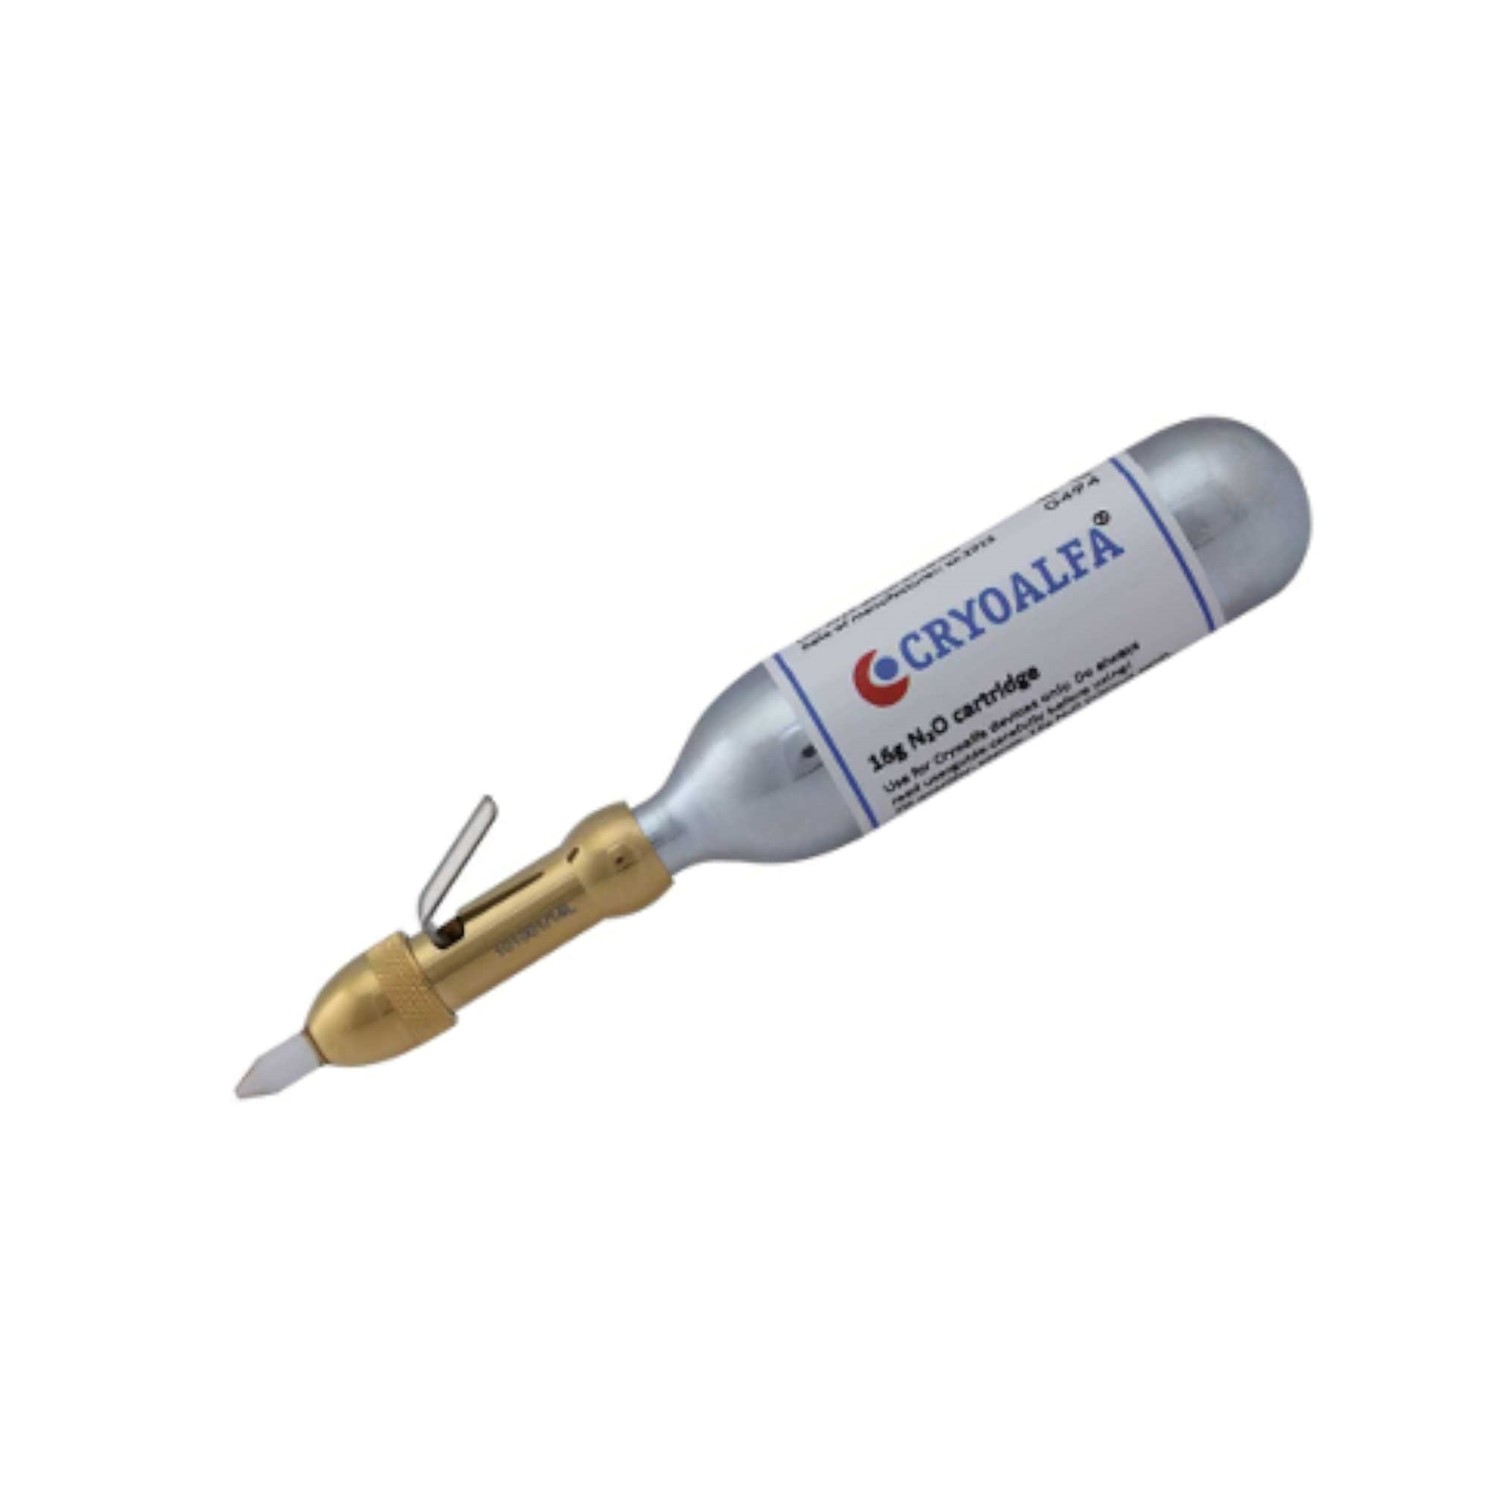 Φορητή κρυοπηξία στυλό Cryoalfa LUX με βαλίτσα και κεφαλή ψεκασμού 5mm (με άκρο που αλλάζει)